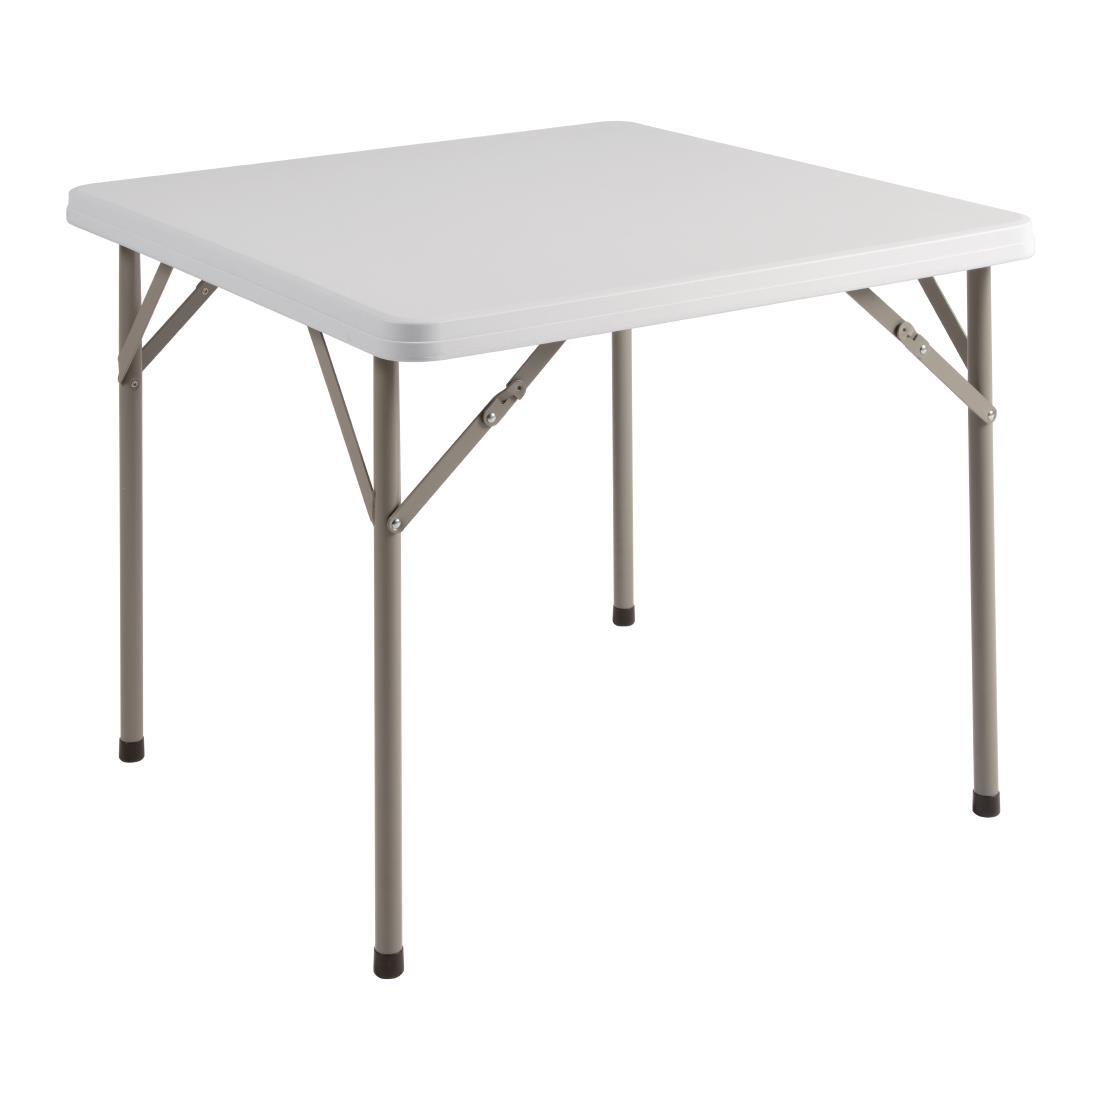 Bolero PE Square Folding Table 3ft White (Single) - Y807  - 3